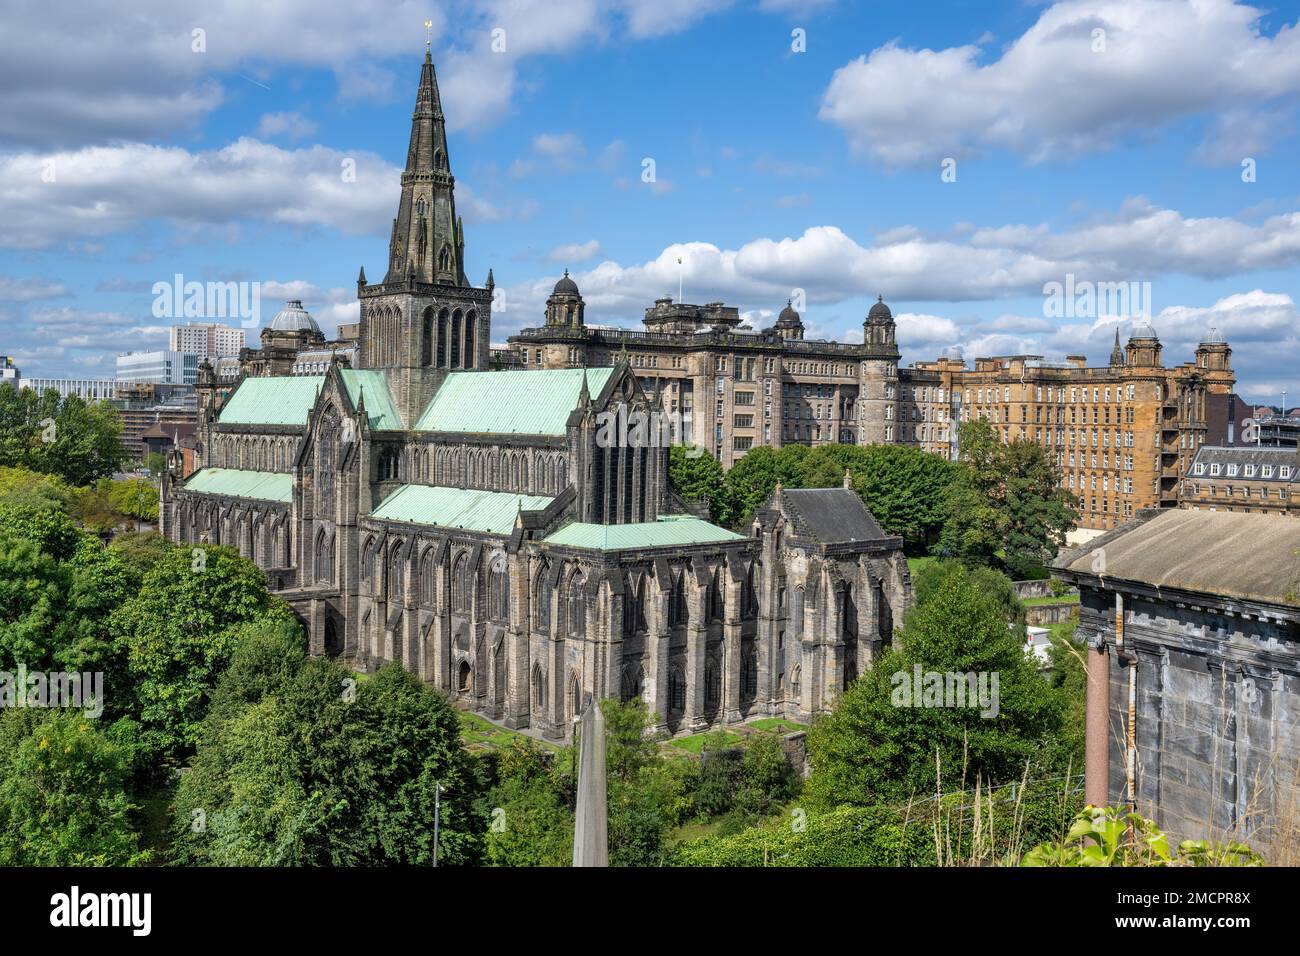 La cathédrale historique de Glasgow du 13e siècle et l'infirmerie royale de Glasgow, vues depuis la nécropole de Glasgow Banque D'Images